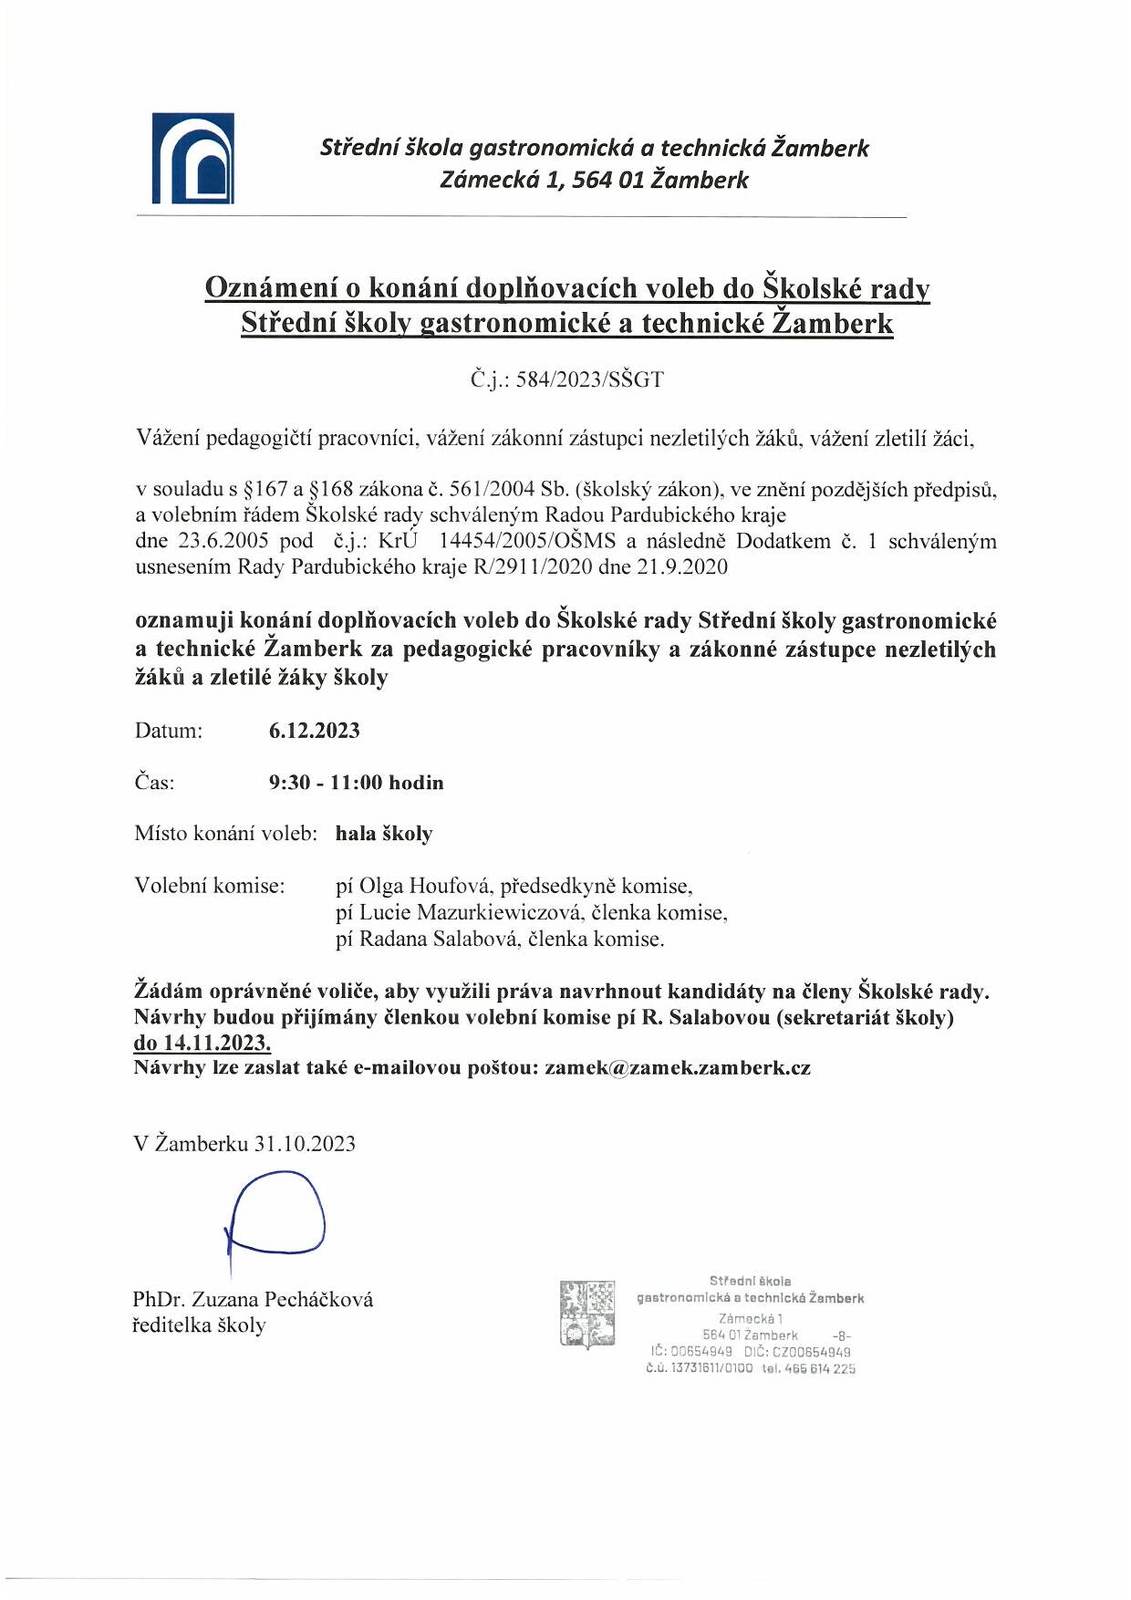 Oznámení o konání doplňovacích voleb do Školské rady SŠGT Žamberk.jpg